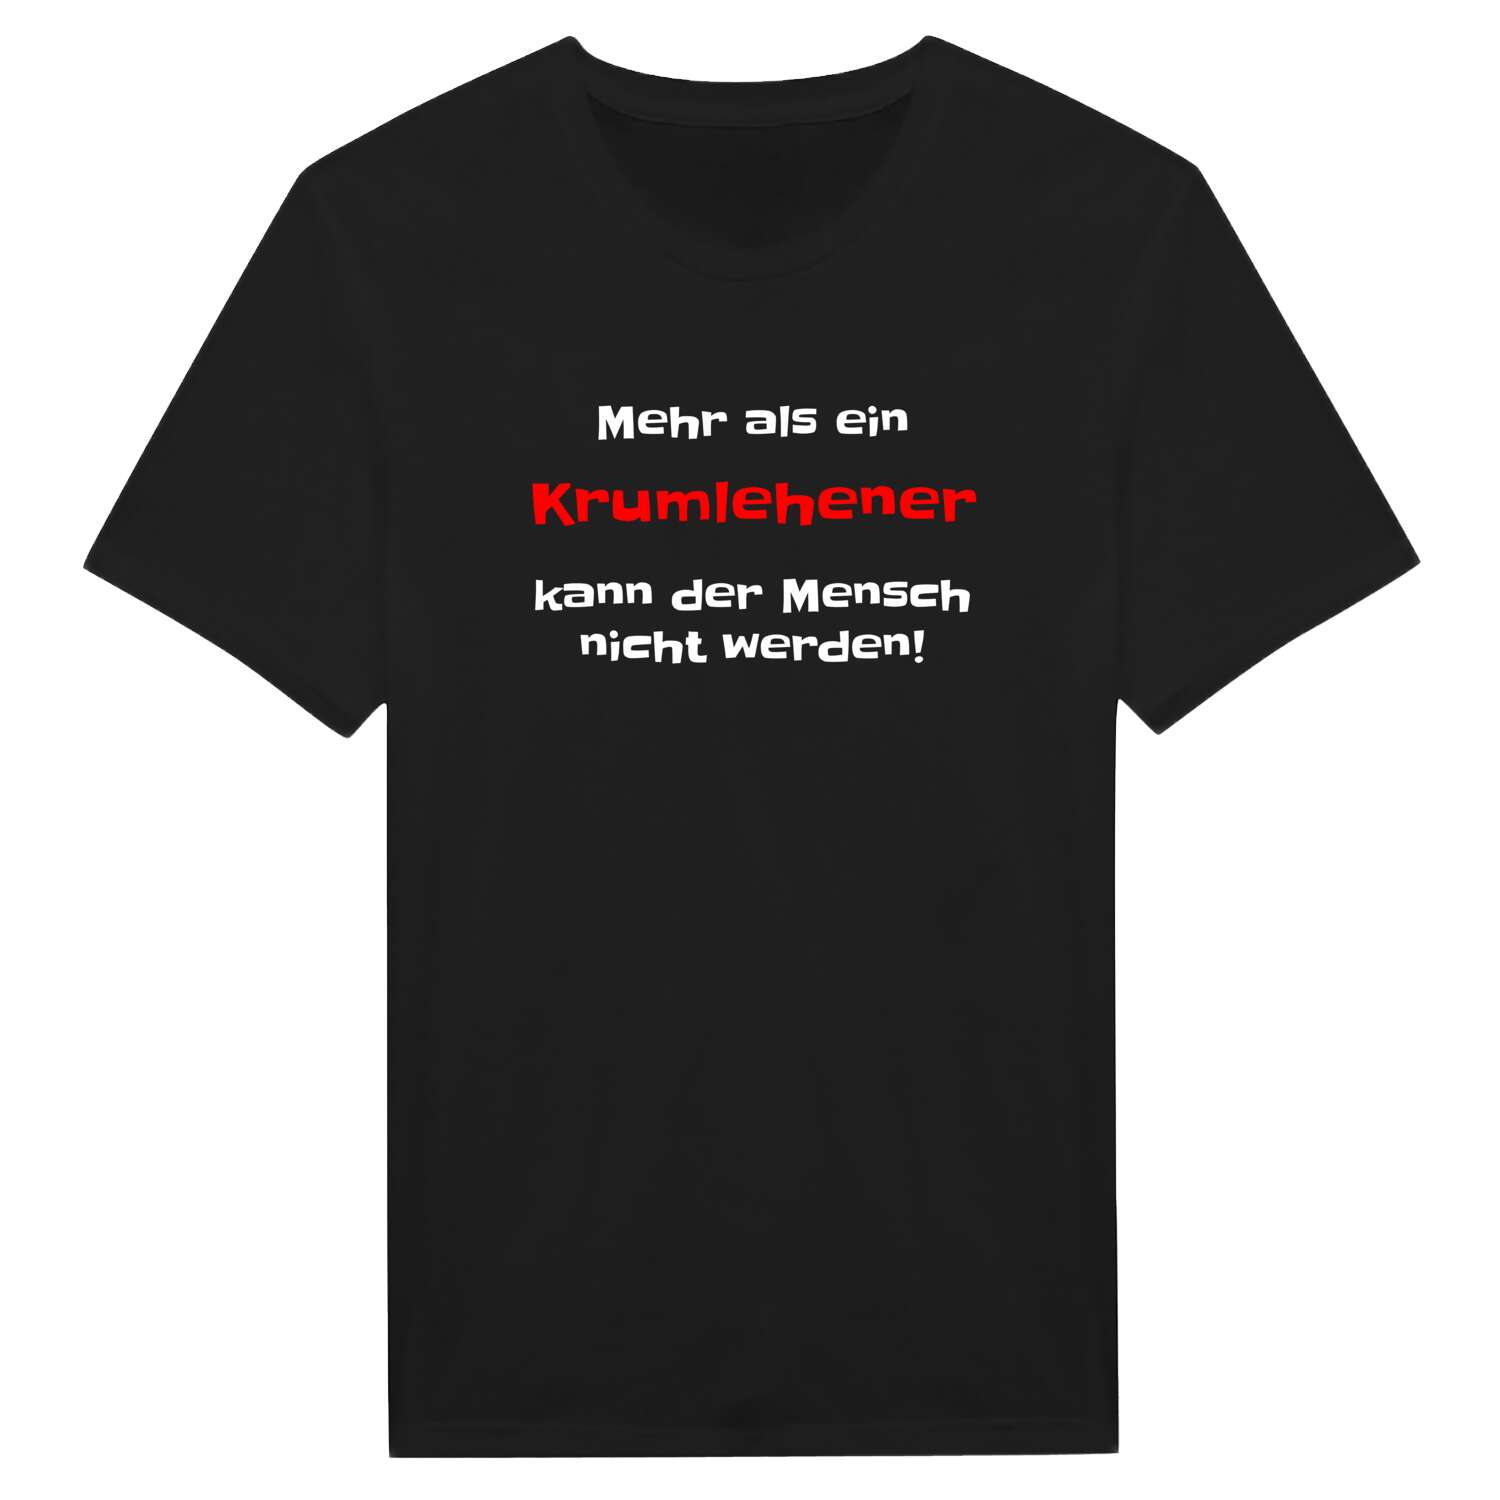 Krumlehen T-Shirt »Mehr als ein«